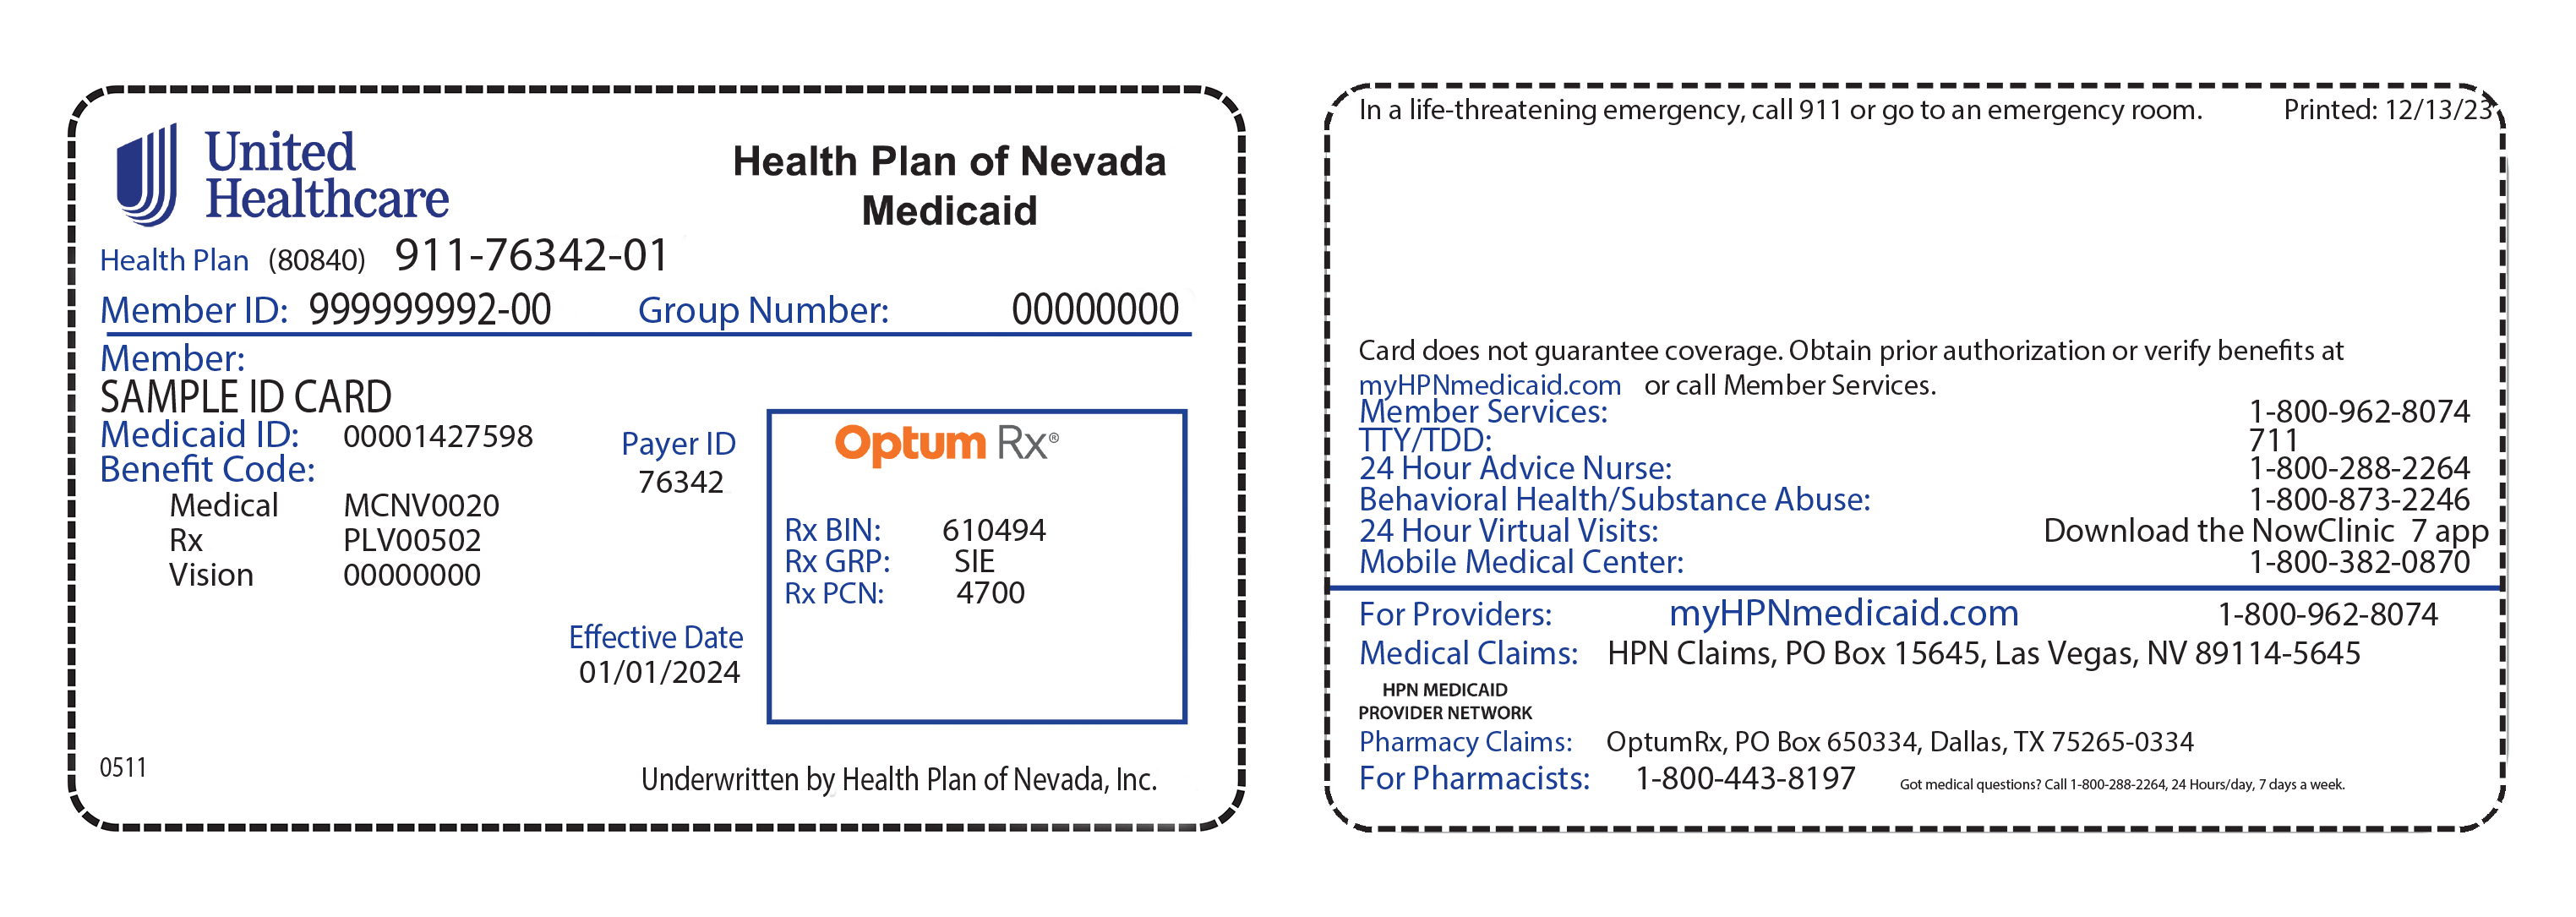 Ejemplo de la tarjeta de identificación del Plan UnitedHealthcare Health Plan of Nevada Medicaid